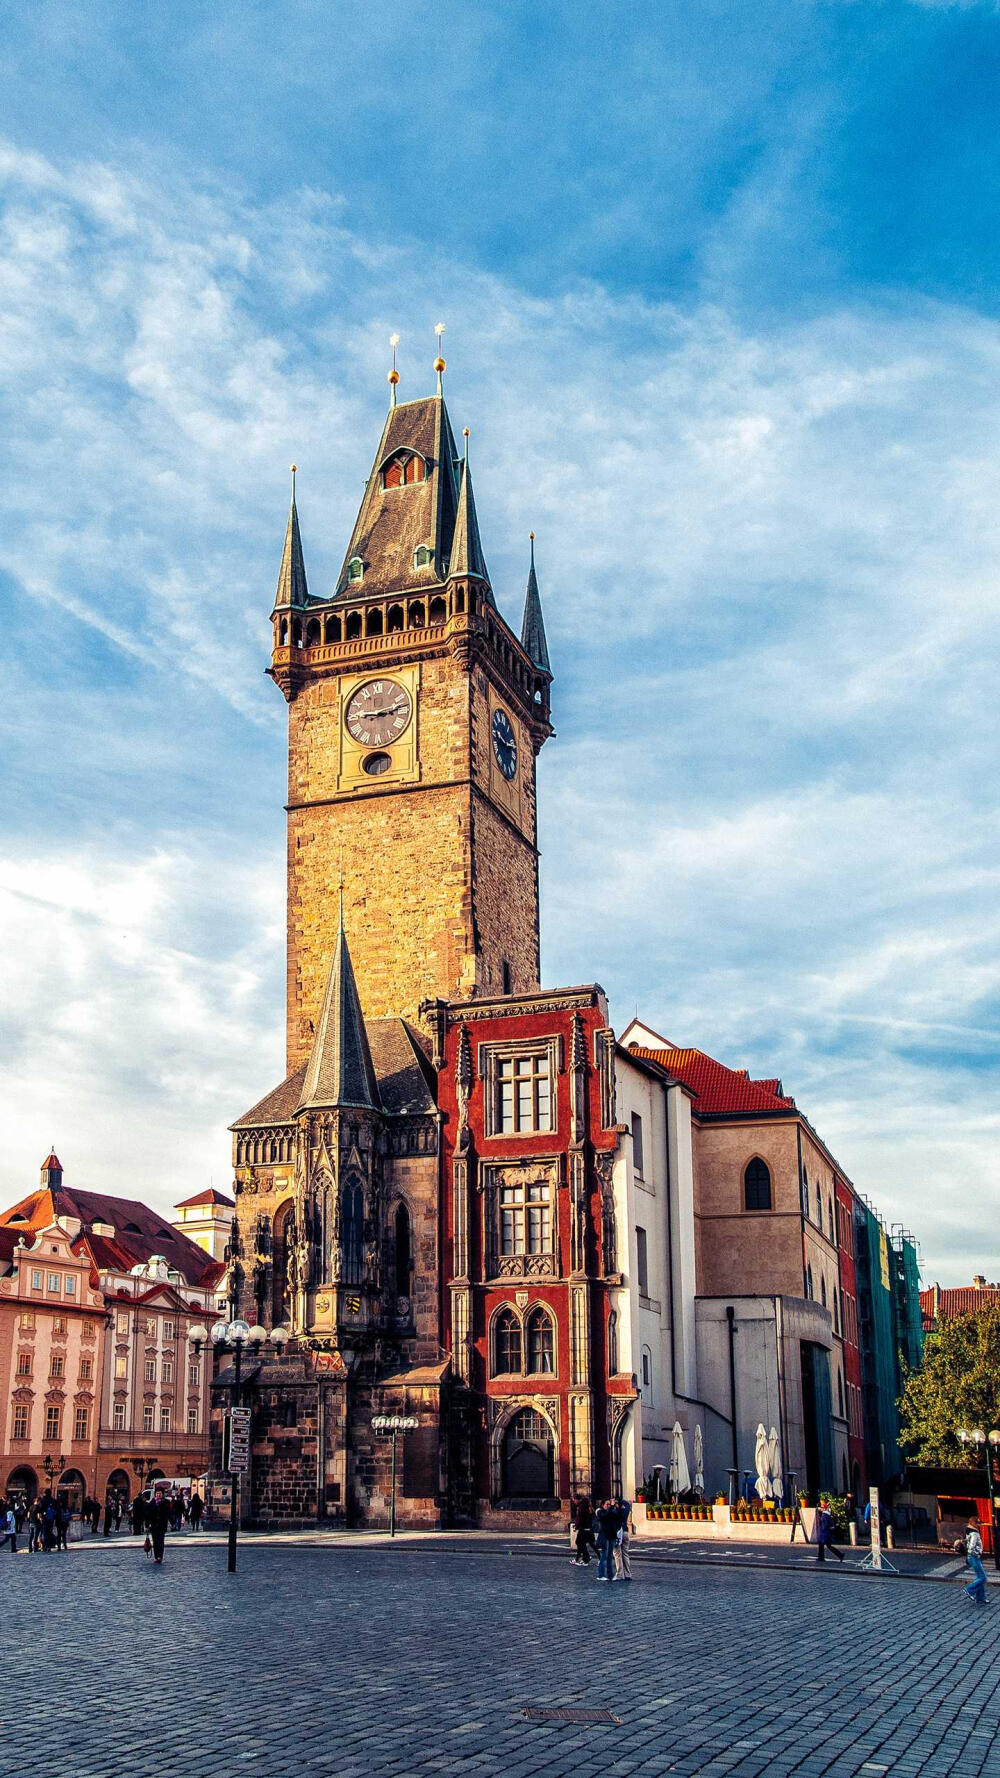 捷克——布拉格天文钟—华为杂志锁屏
捷克首都的布拉格天文钟，精美的工艺与文化在时间的打磨下更显迷人。©壹刻传媒